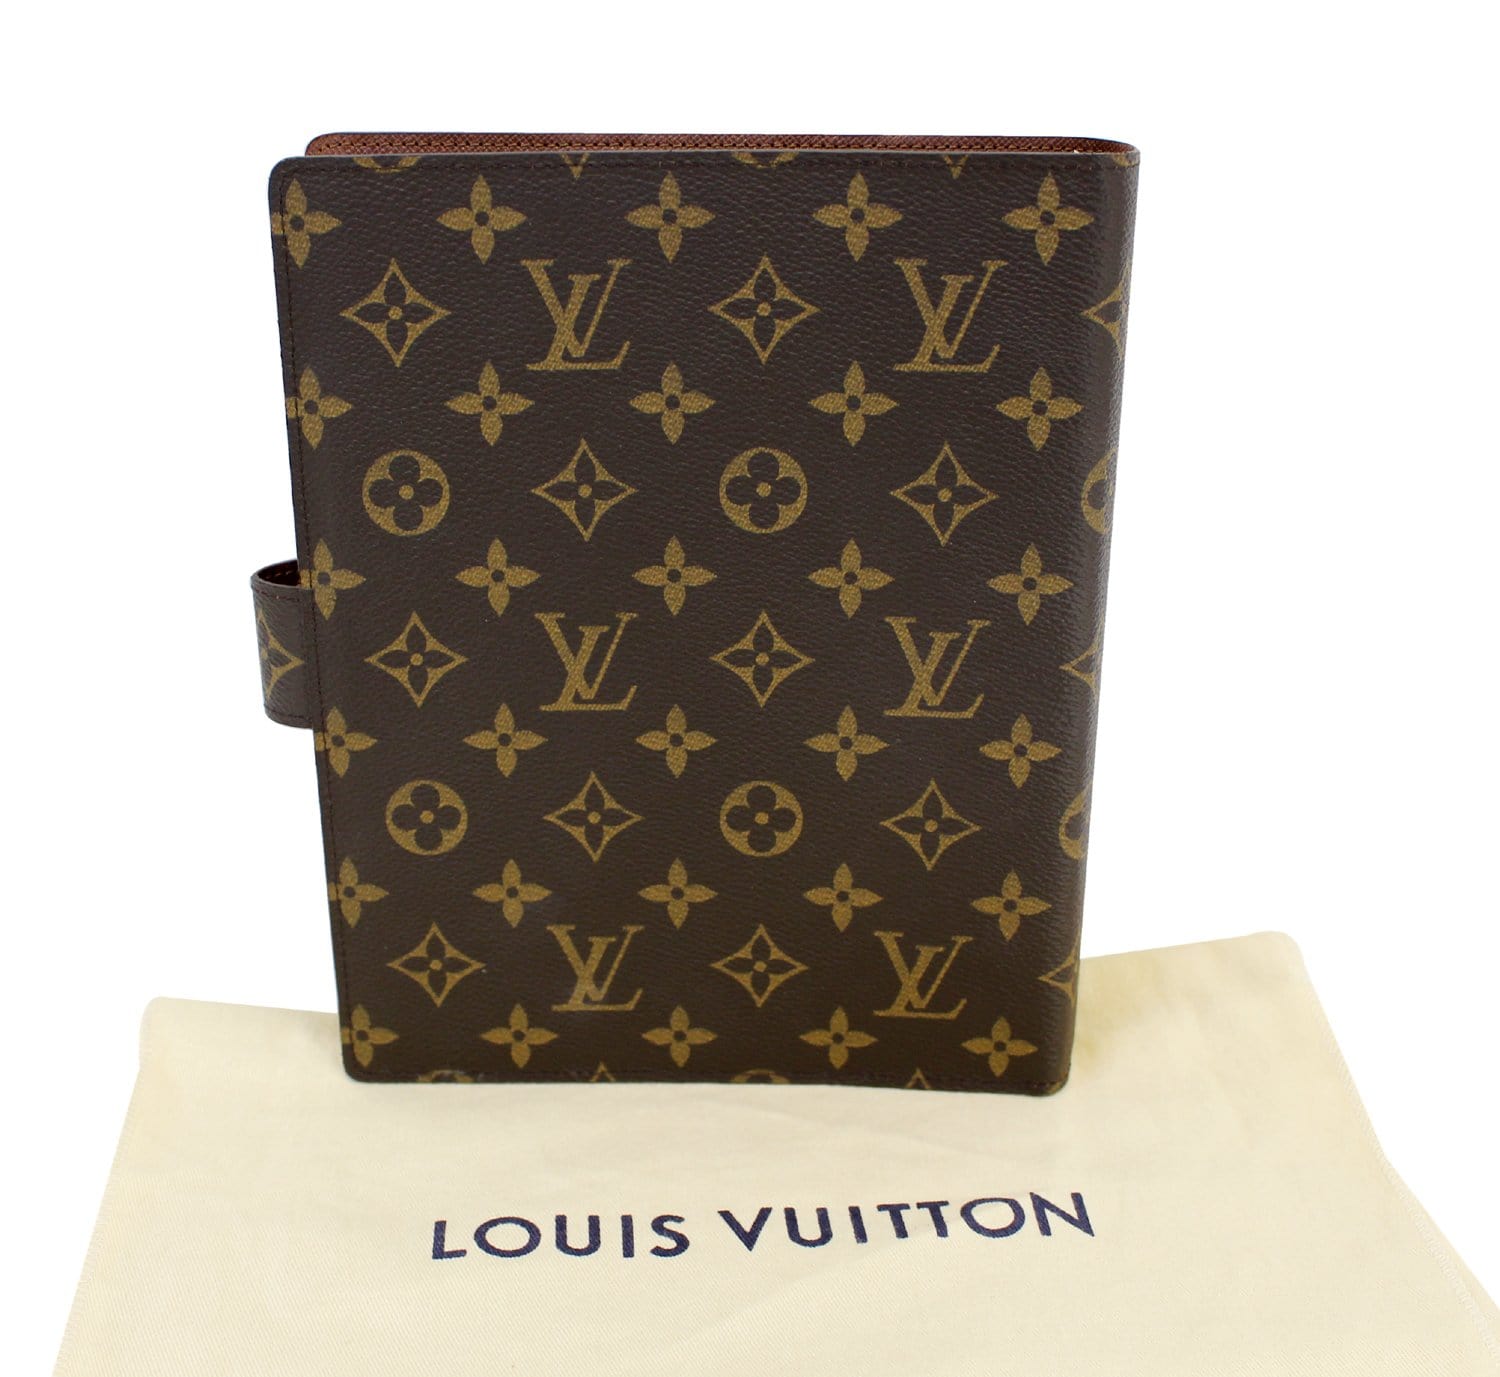 Louis Vuitton large ring agenda  Louis vuitton gifts, Louis vuitton planner,  Louis vuitton